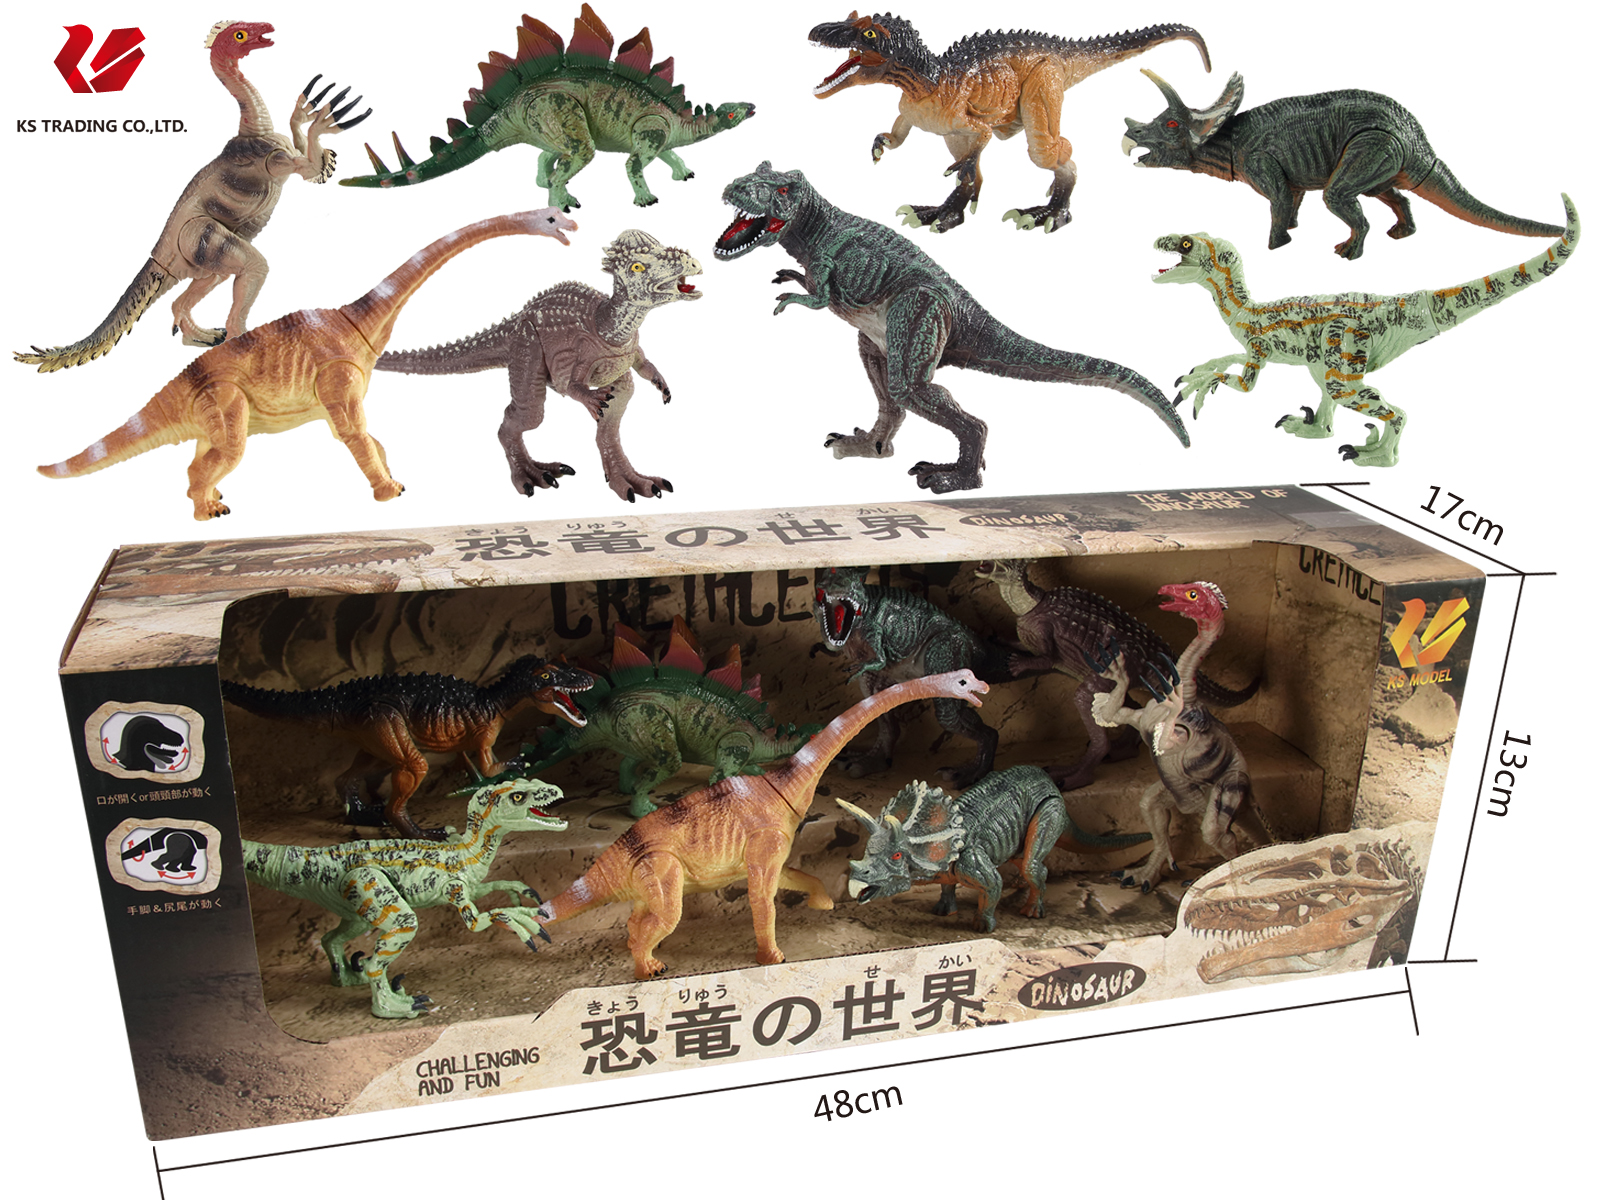 新品?正規品 輸入 プレゼントに大人気 リアルで満足間違いなし 恐竜おもちゃ 恐竜フィギア ダイナソーモデル 8体セットX'masプレゼントや誕生日プレゼントに大人気 送料無料 子供 キッズ ギフト 恐竜 フィギュア DINOSAUR MODEL 本格的なリアルフィギュア 可動できる恐竜おもちゃ 可動できる恐竜フィギュア 恐竜の世界セットA godhammer.com godhammer.com